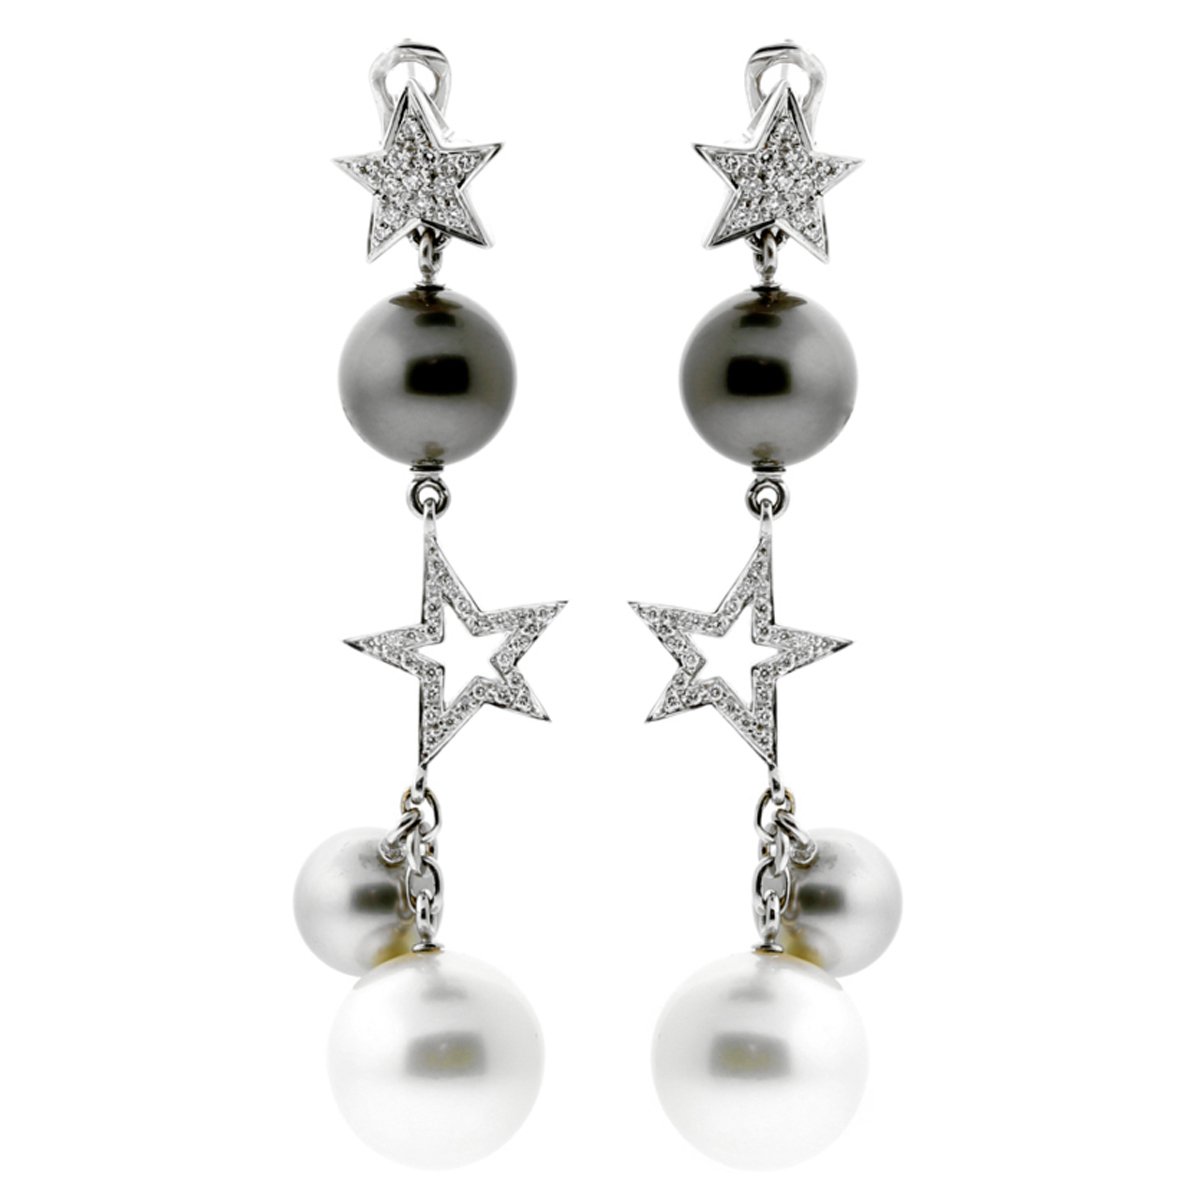 Chanel Diamond Pearl Earrings Hotsell, SAVE 51% 